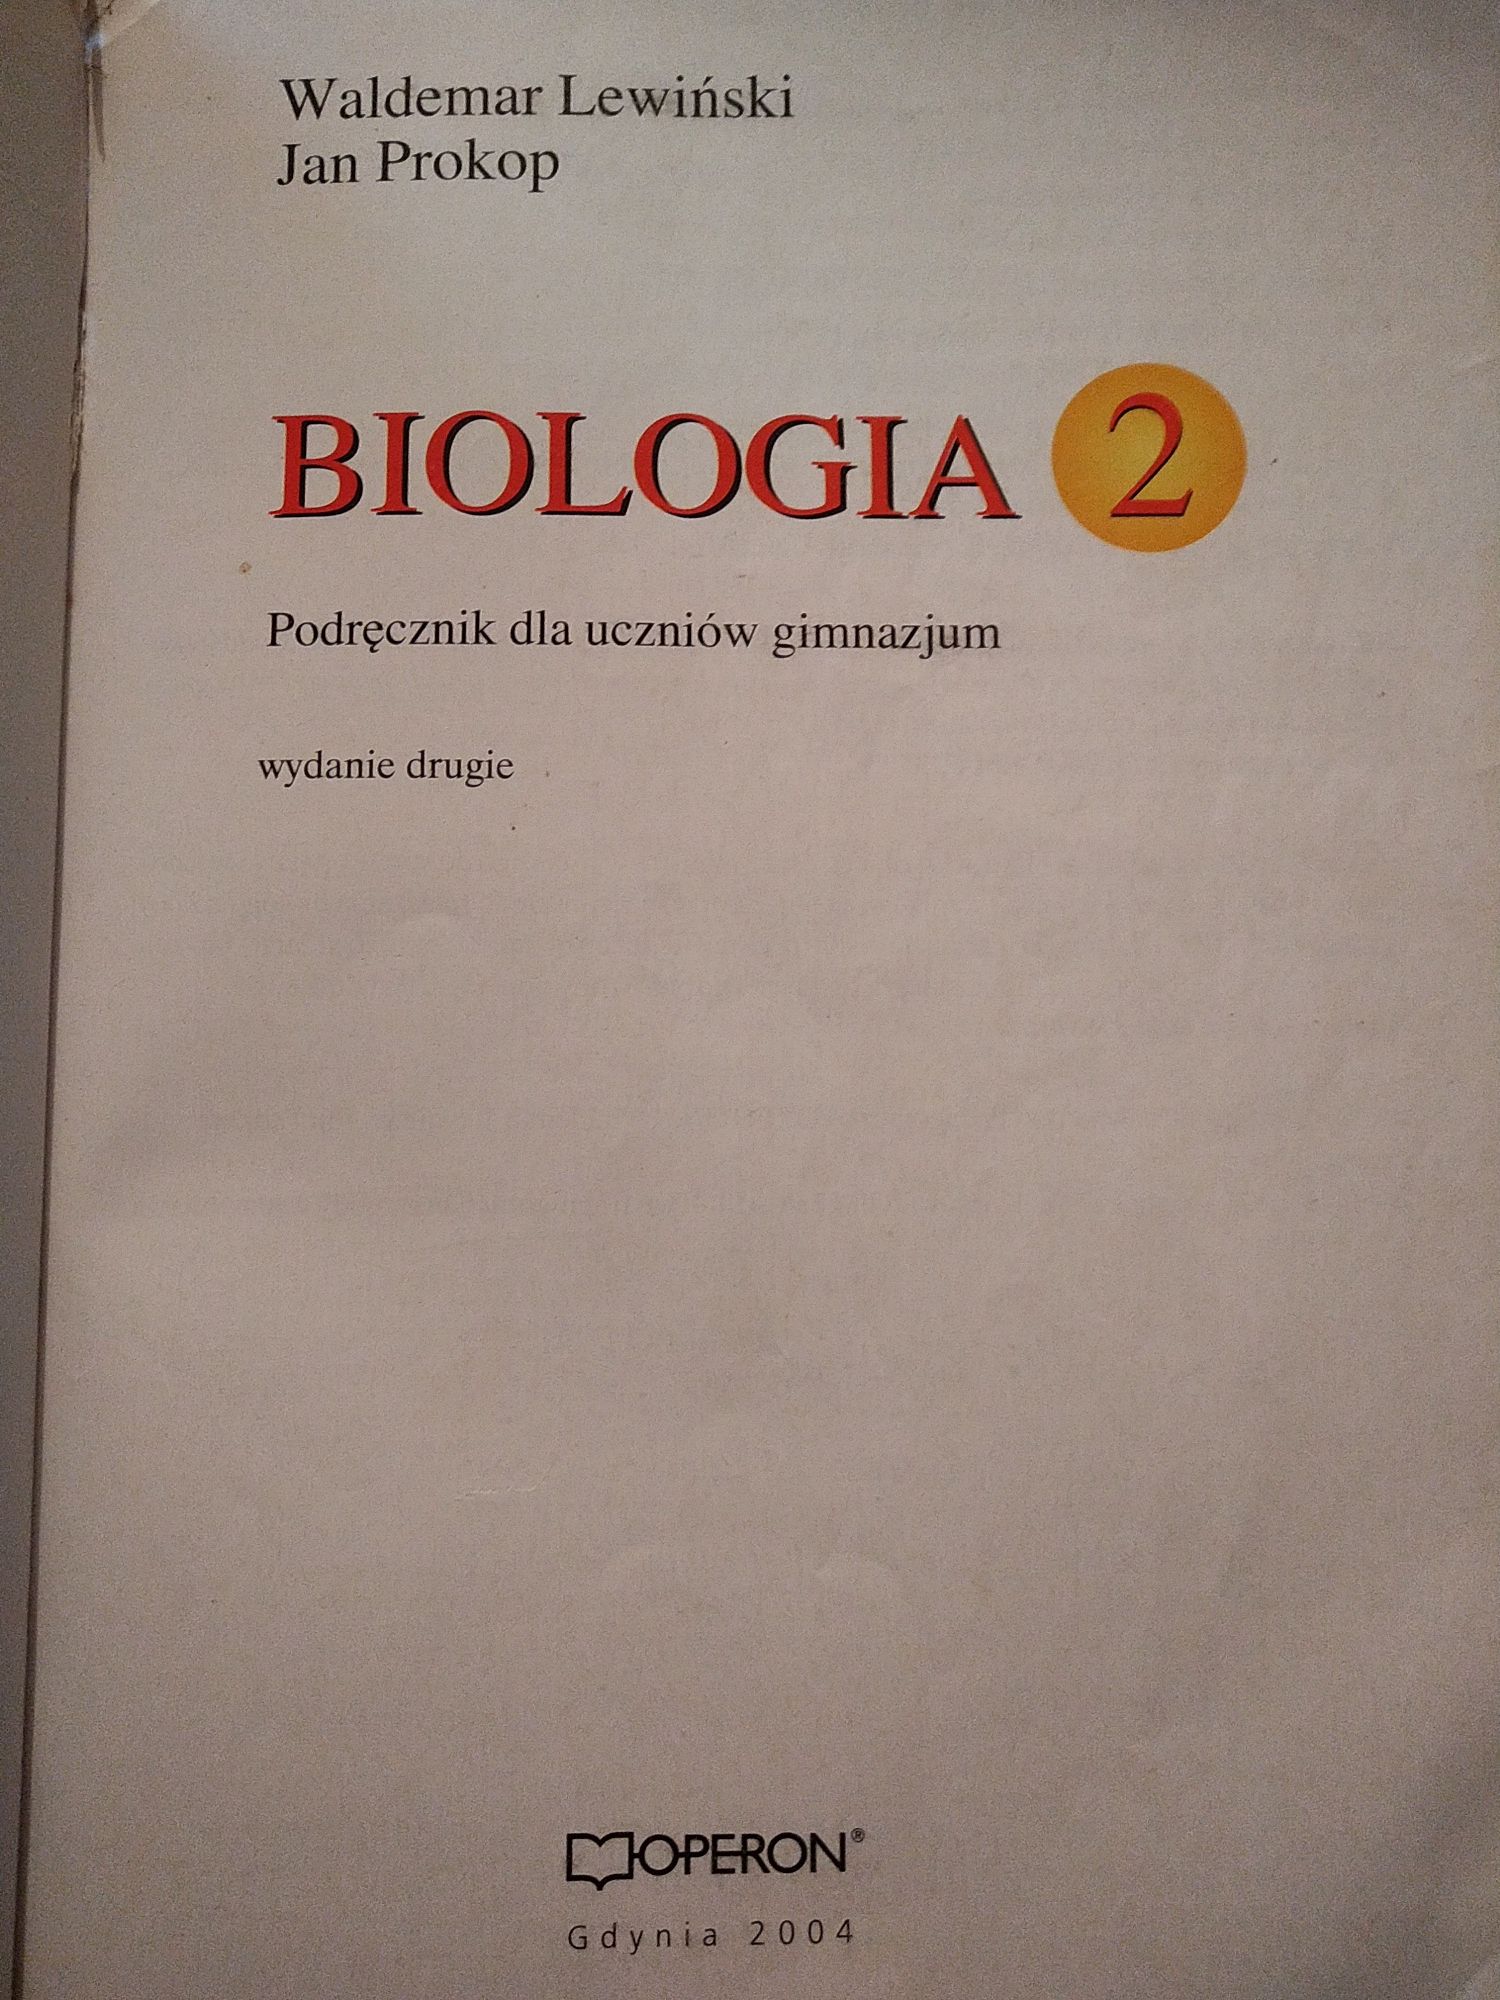 Podręcznik do biologii kl.2.Jan Prokop, Waldemar Lewiński.wyd.Operon